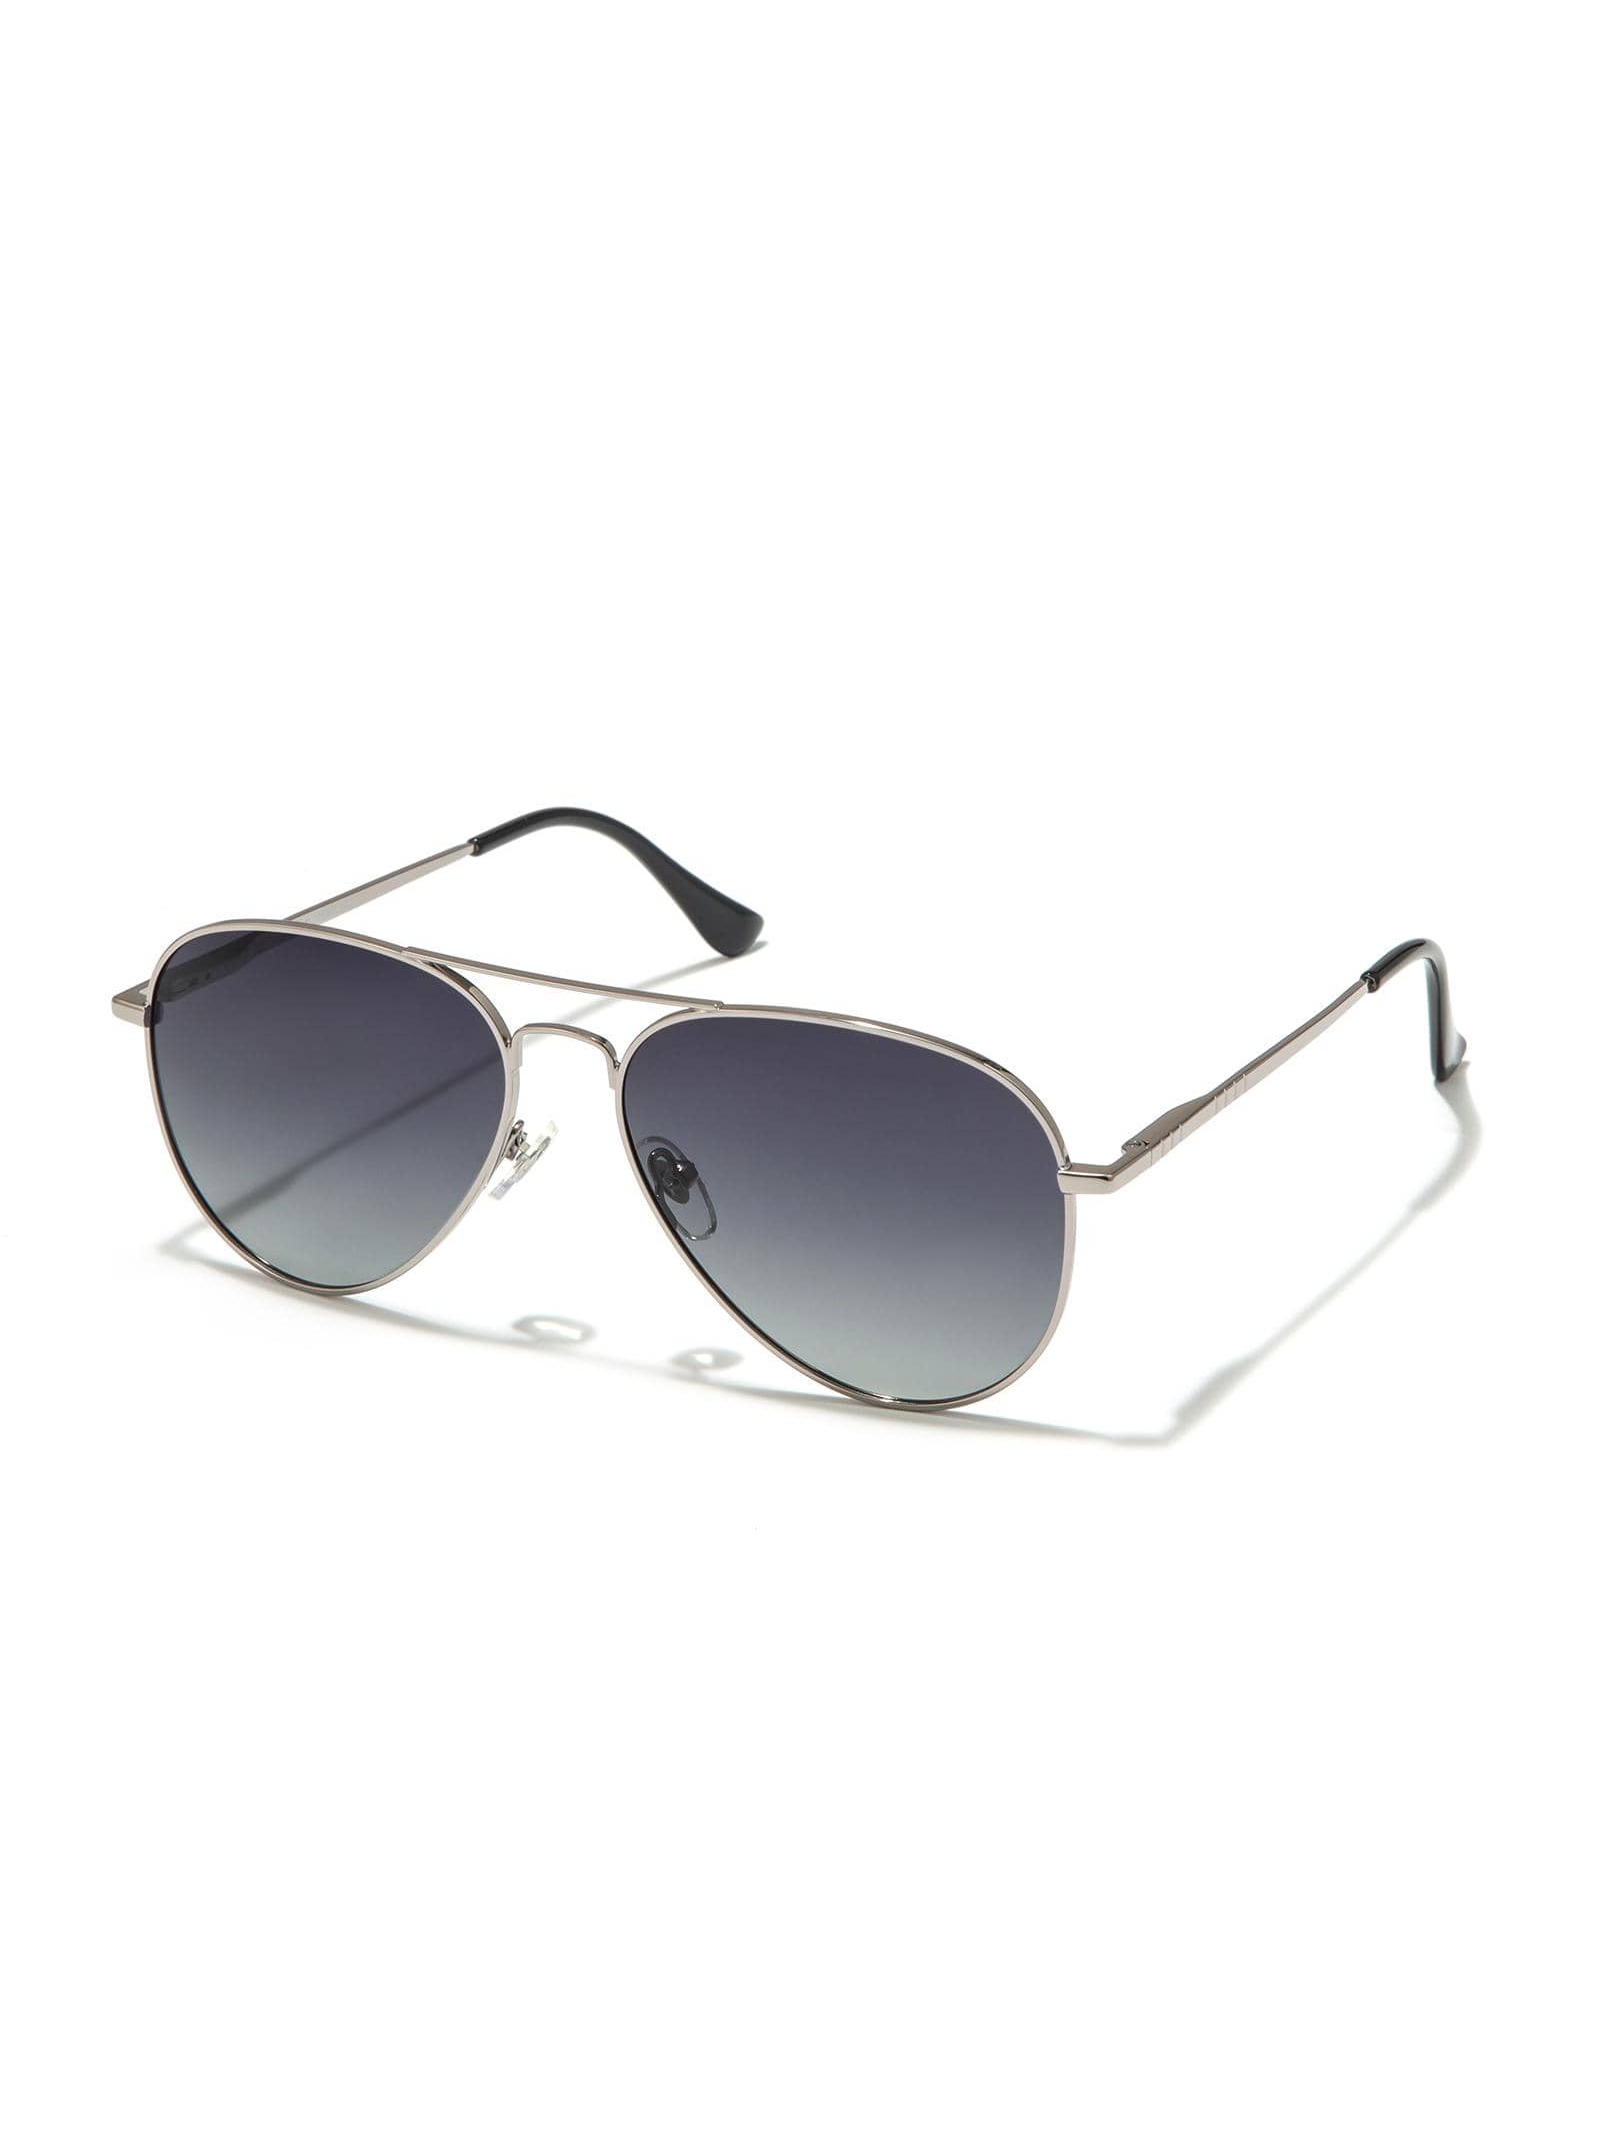 Солнцезащитные очки-авиаторы Veda Tinda для женщин и мужчин солнцезащитные очки emporio armani авиаторы оправа пластик с защитой от уф зеркальные для мужчин белый